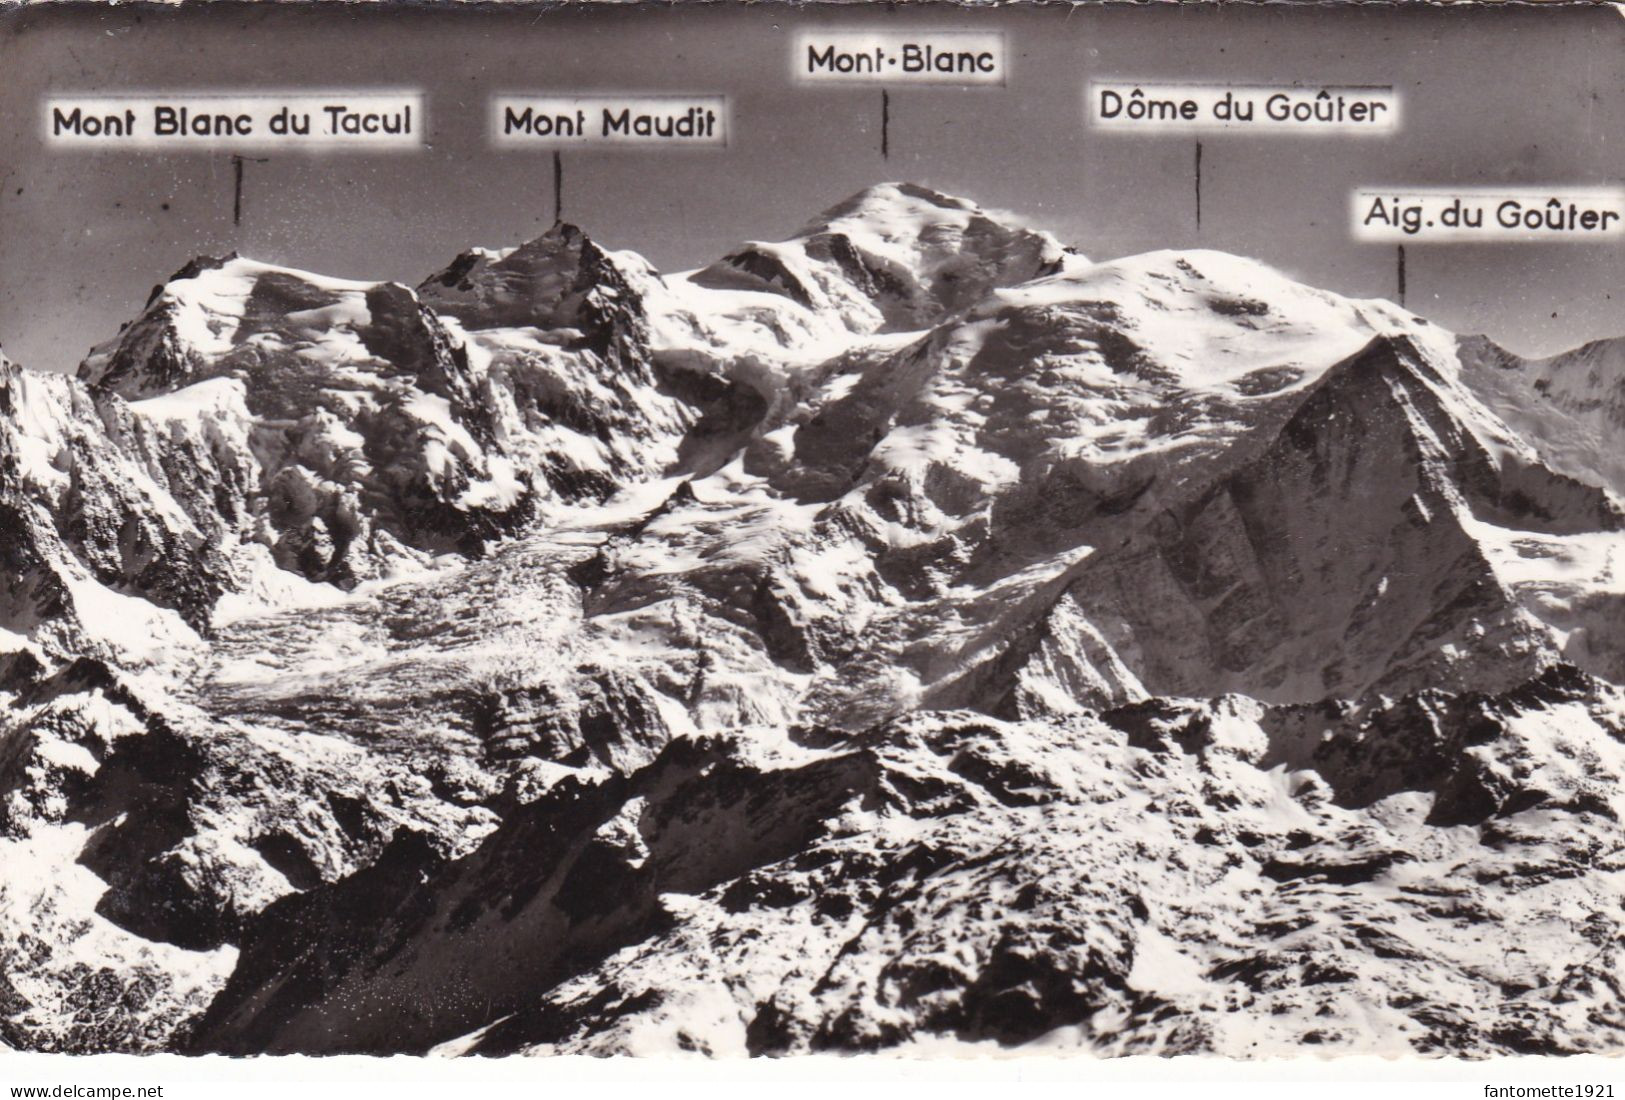 MASSIF DU MONT BLANC/CLICHE ROSSAT MIGNOD (dil306) - Chamonix-Mont-Blanc